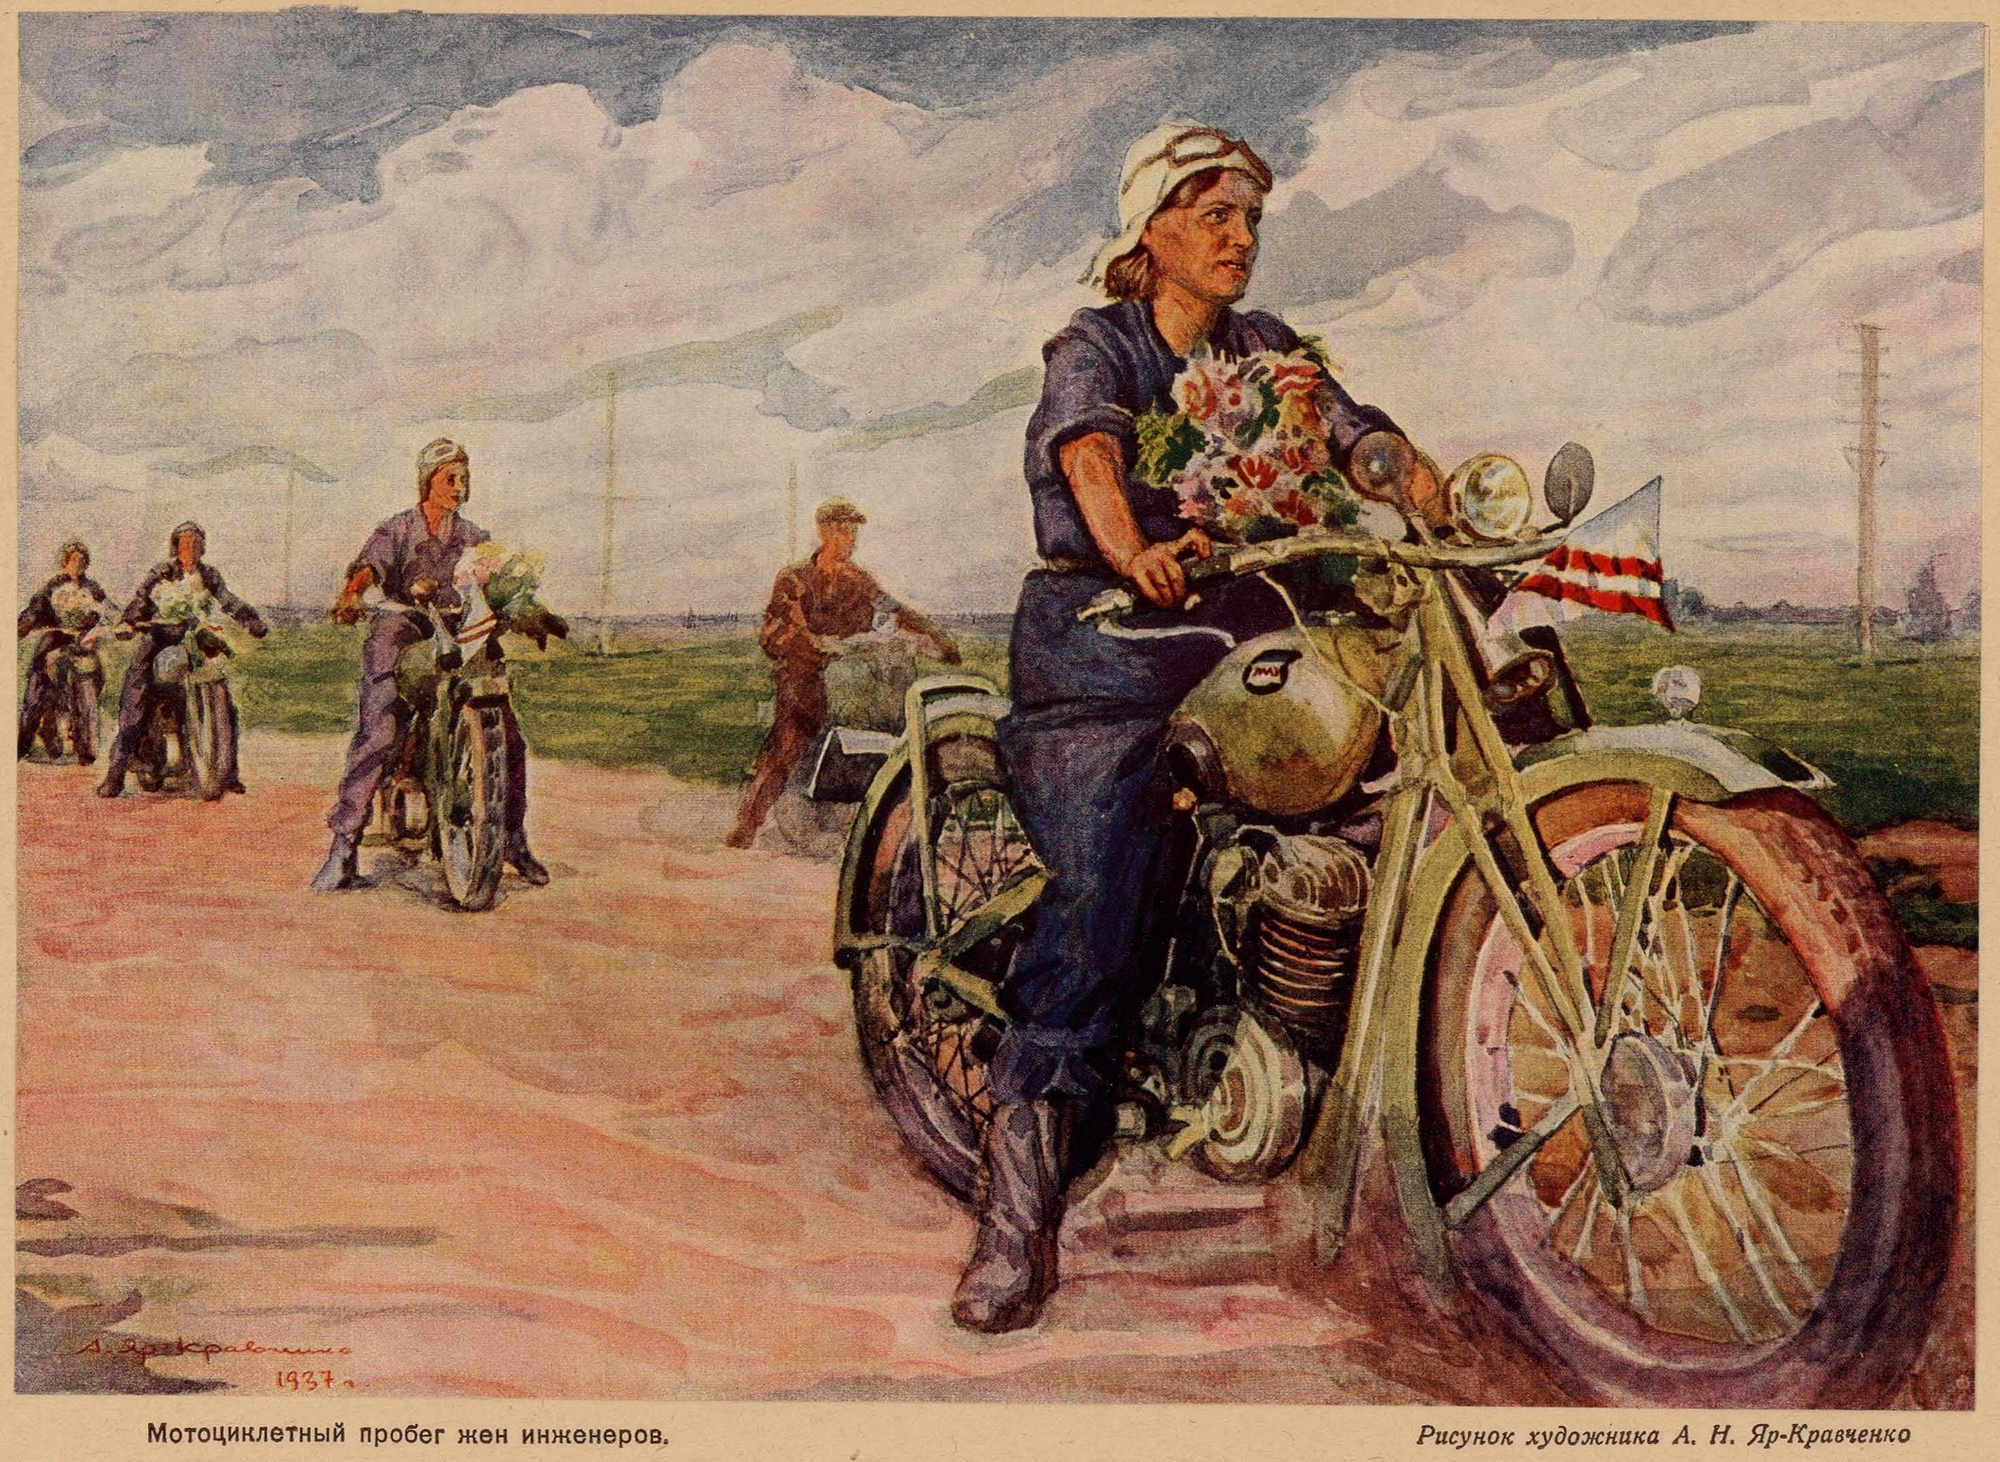 Мотоциклетный пробег жен инженеров. Рисунок художника А. Н. Яр-Кравченко